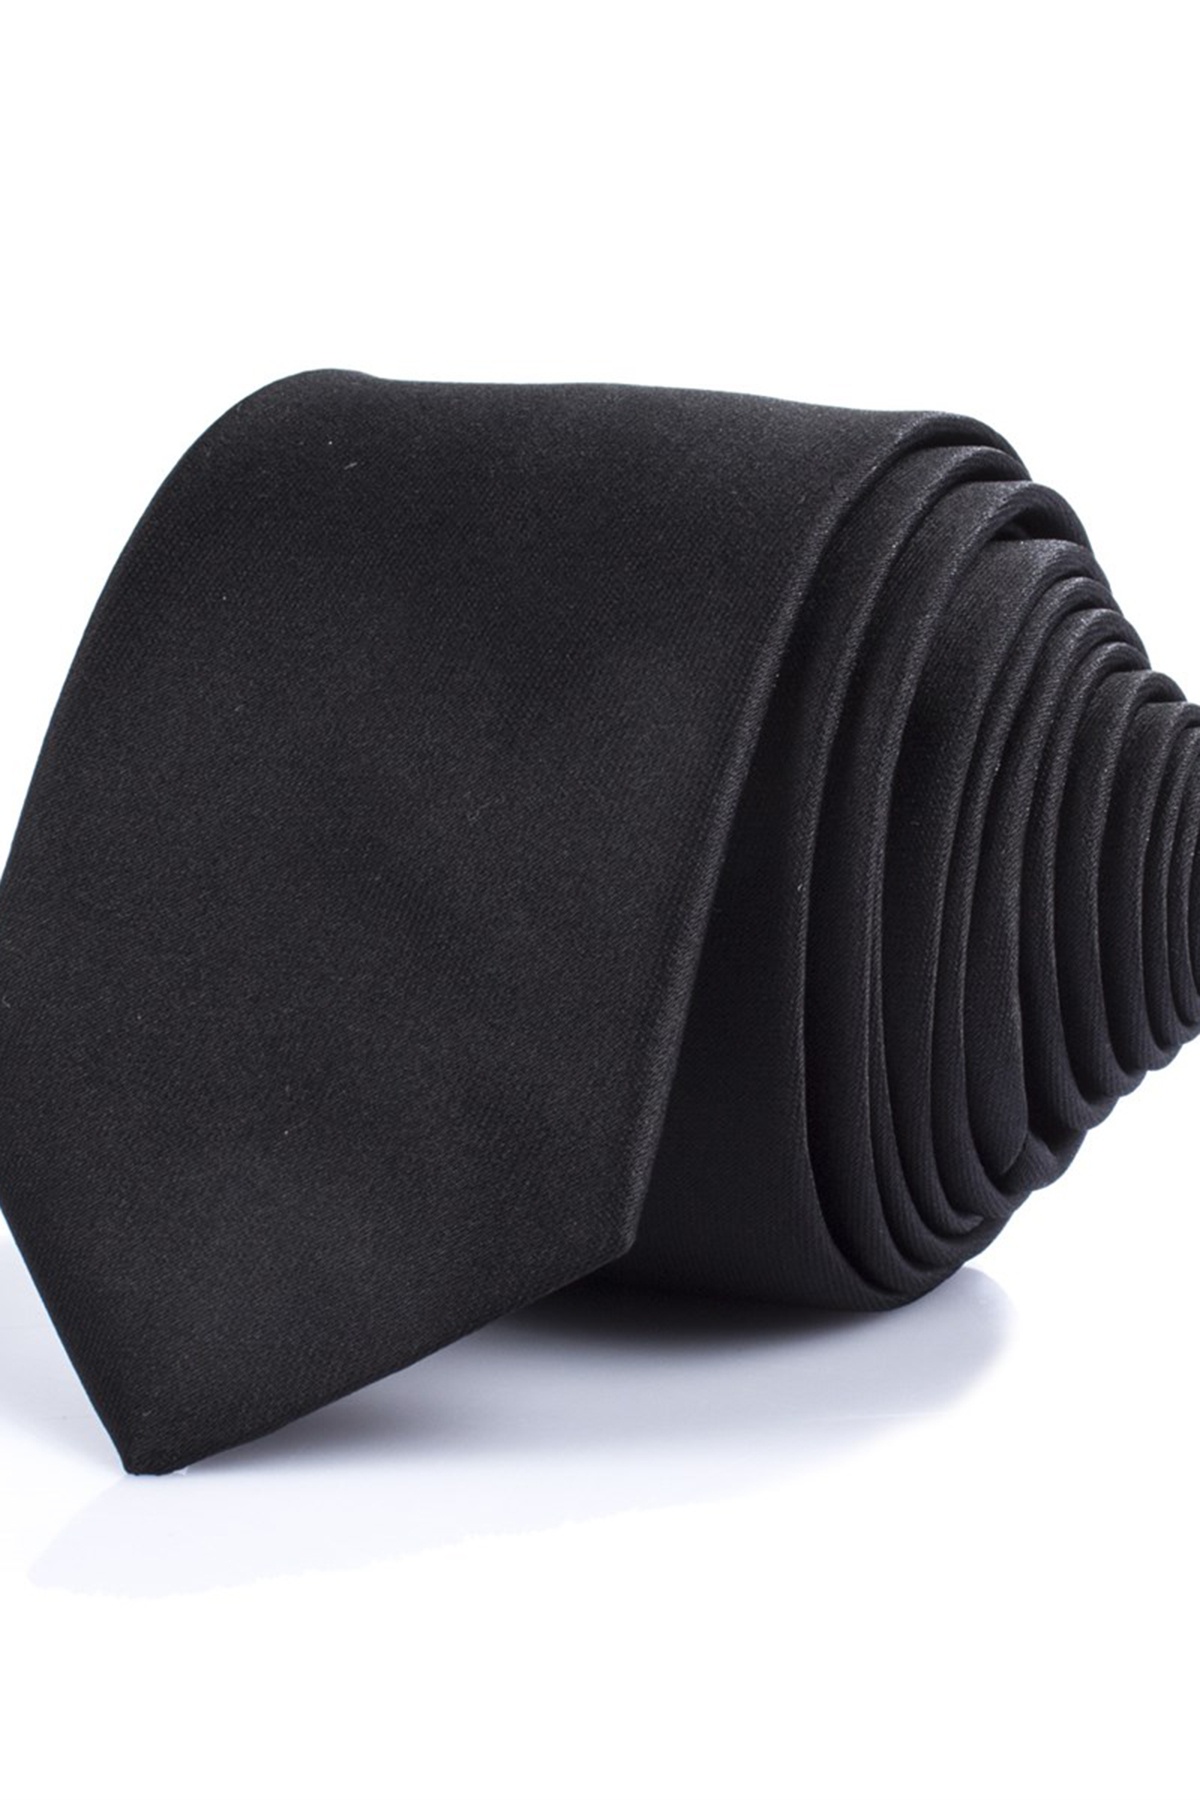 Fekete színű vékony nyakkendő